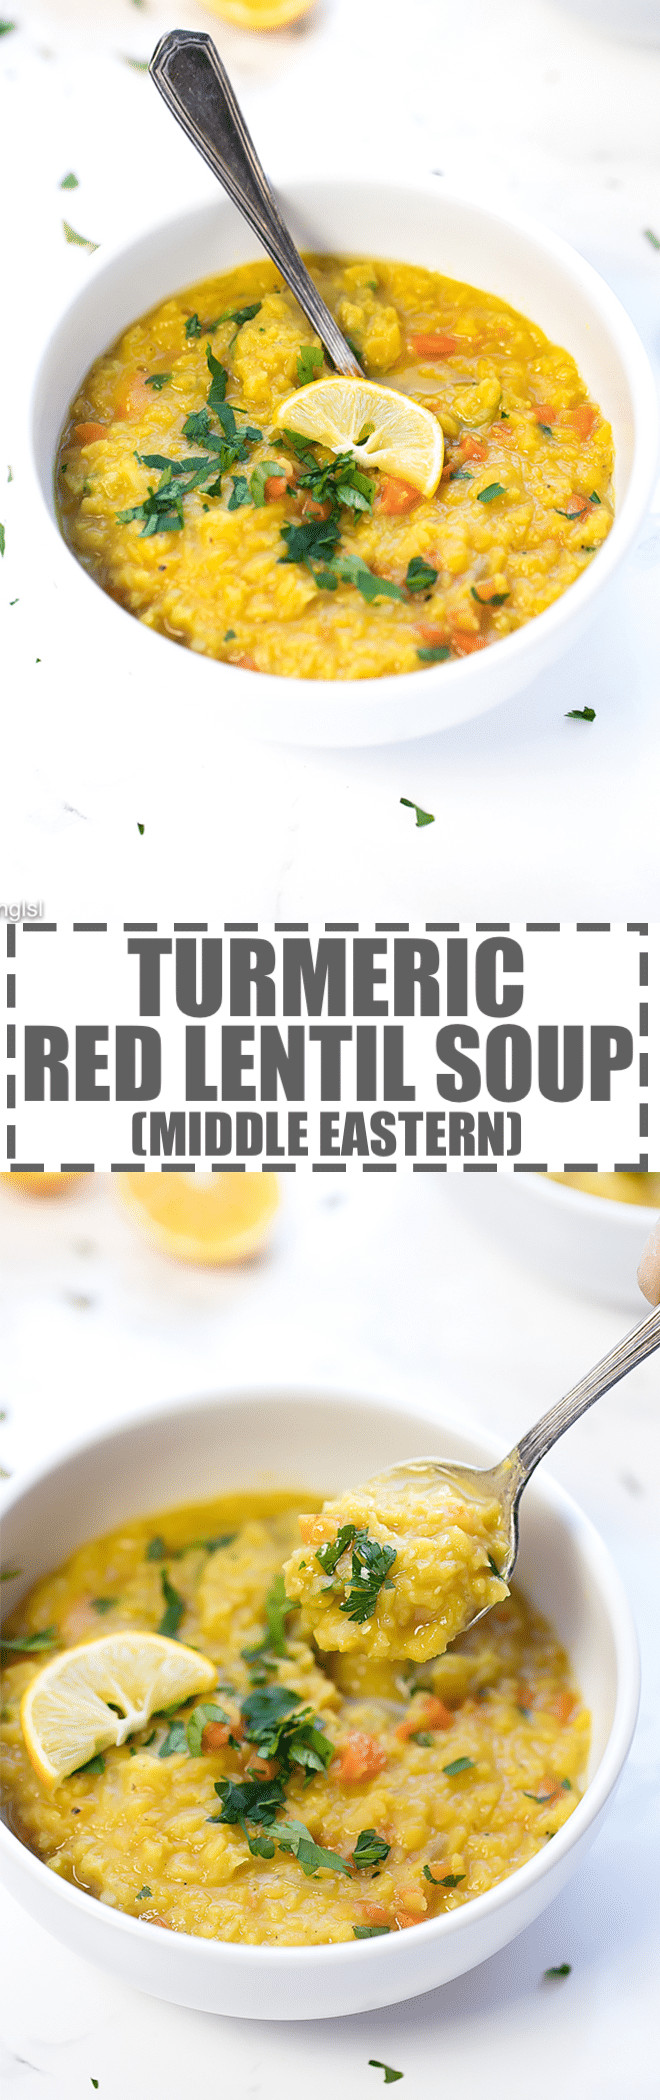 Middle Eastern Lentil Recipes
 Middle Eastern Lentil Soup Recipe Cooking LSL